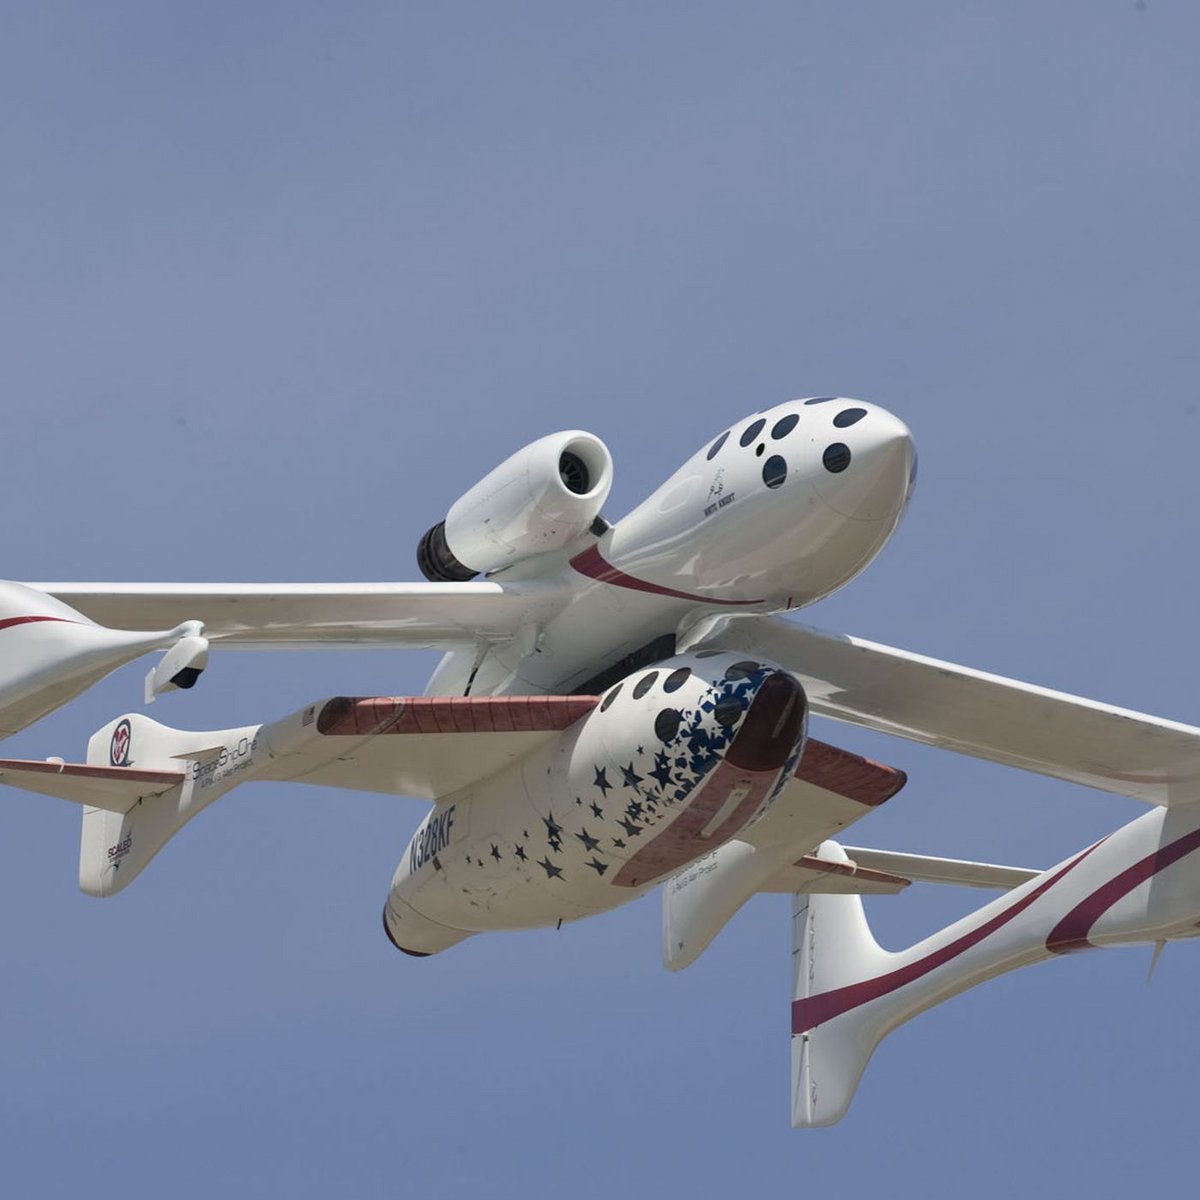 Le SpaceShipOne sous le ventre de WhiteKnight. Cela ne ressemble à aucun avion d'une génération précédente ! Crédits Scaled Composites